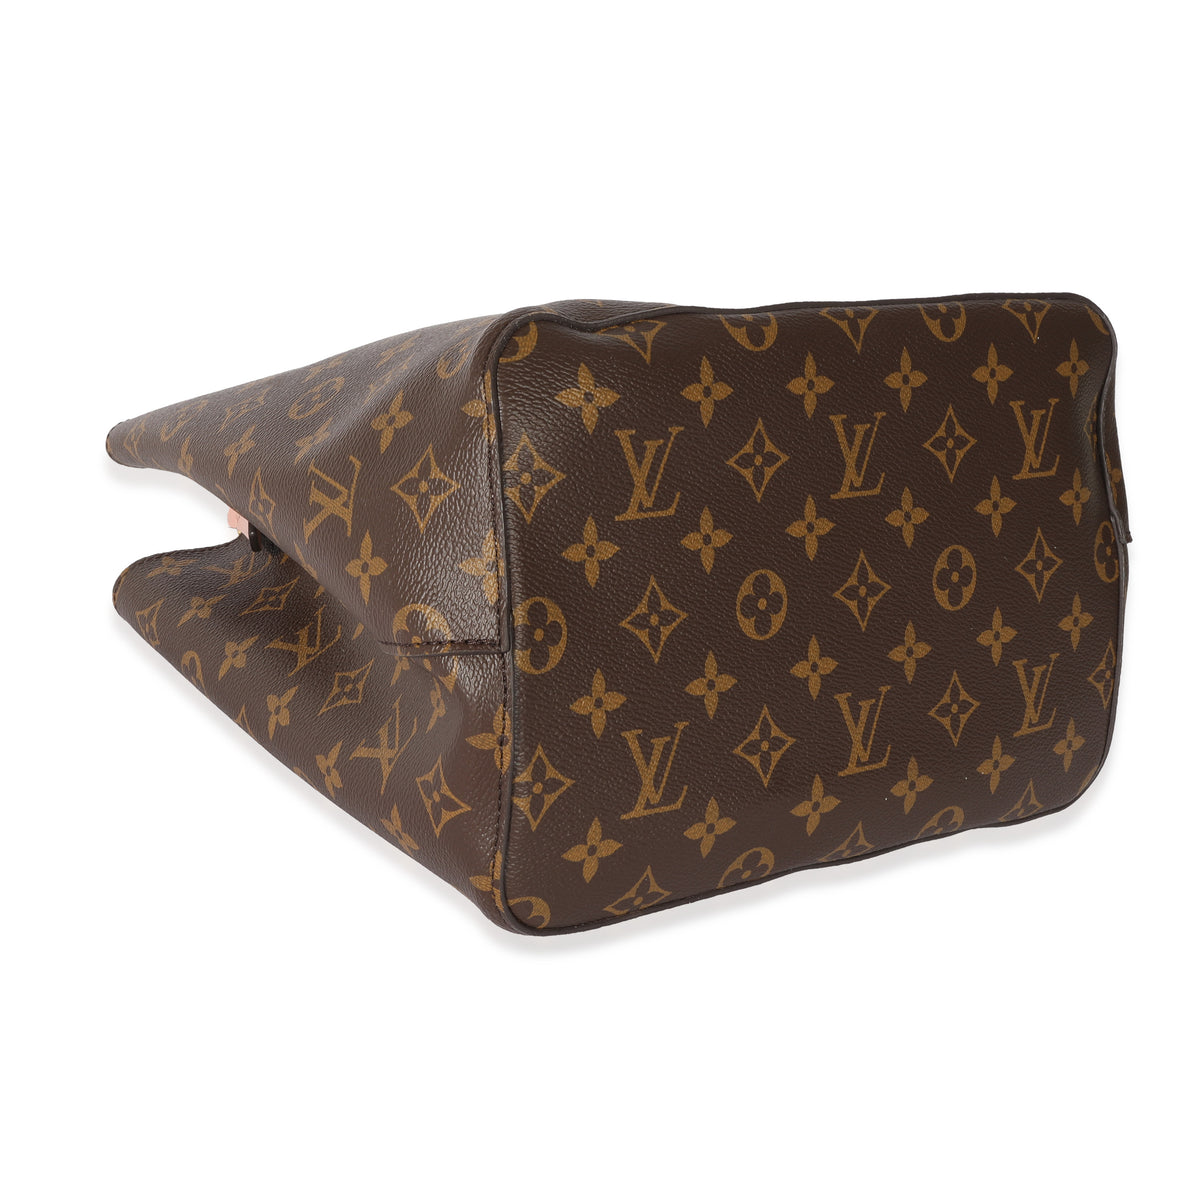 Louis Vuitton Neonoe Mm Rose Poudre Brown Monogram Canvas Shoulder Bag